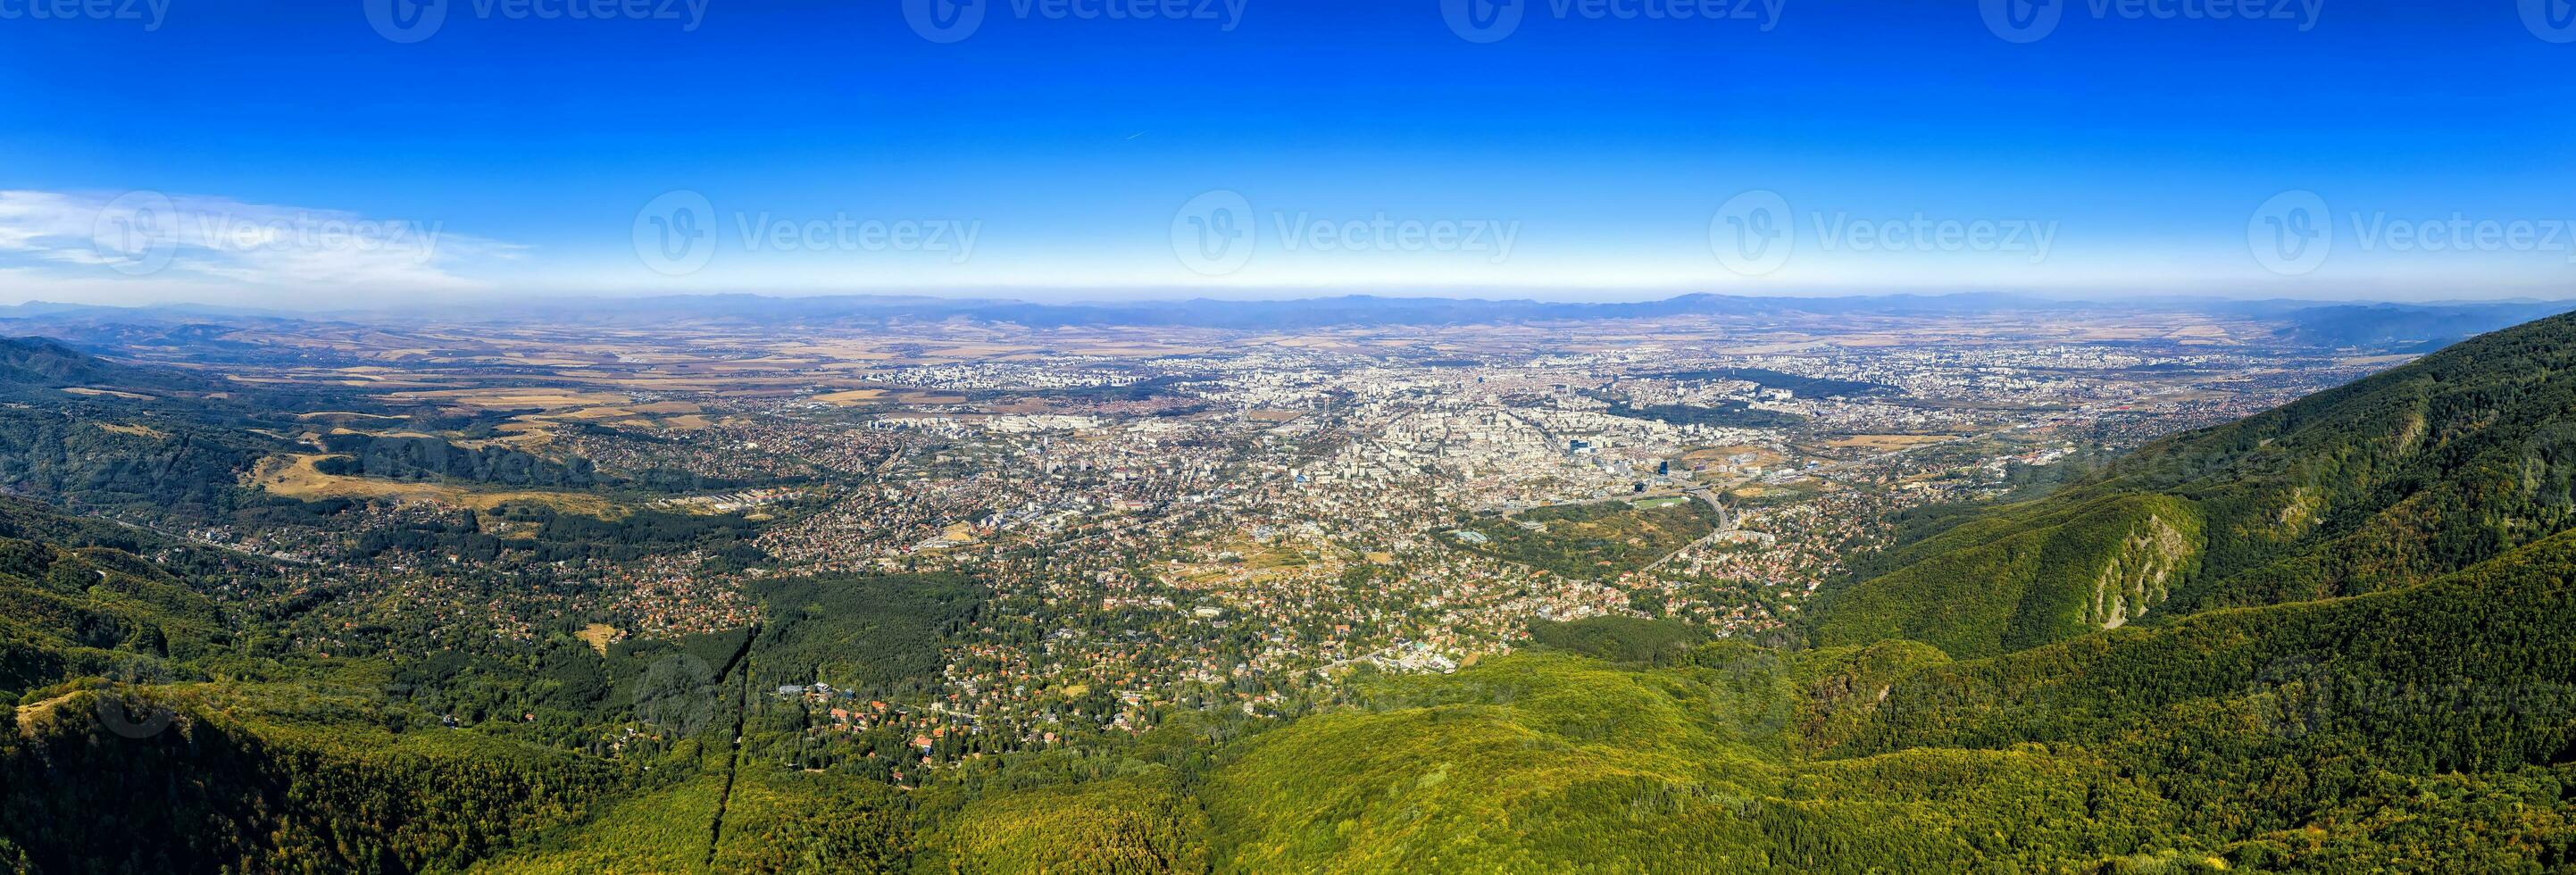 fantastisk antenn se från de berg över de stad Sofia, huvudstad av bulgarien. hög upplösning foto